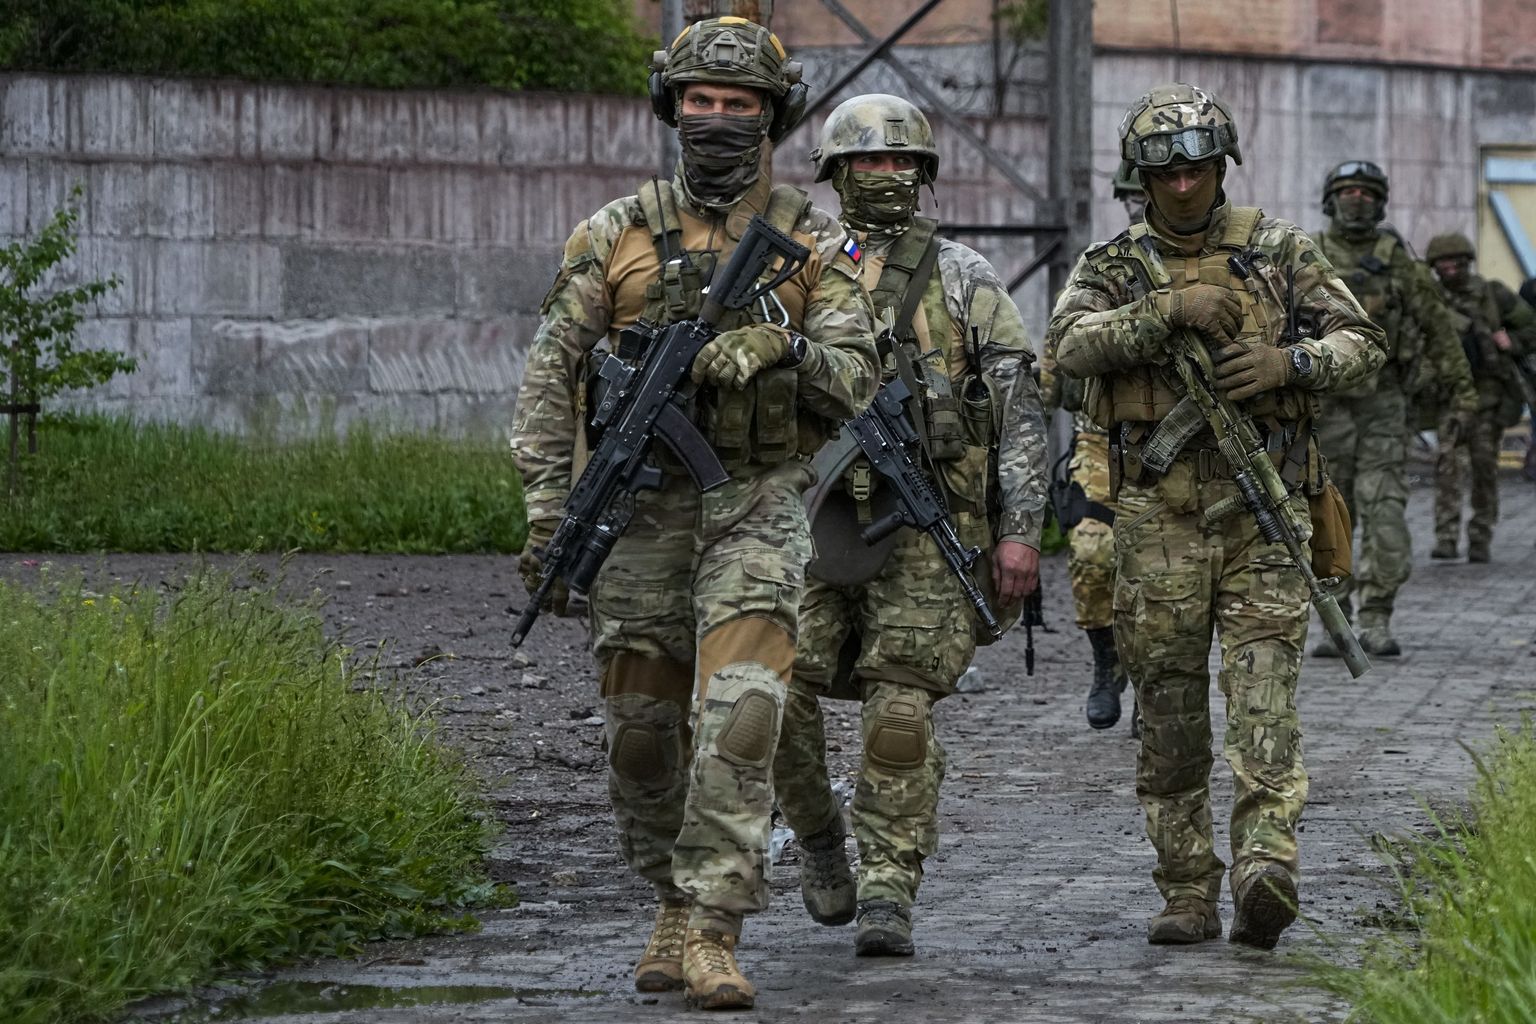 Vene sõdurid nende kätte langenud Lõuna-Ukraina linnas Mariupolis. Foto on tehtud 18. mail 2022